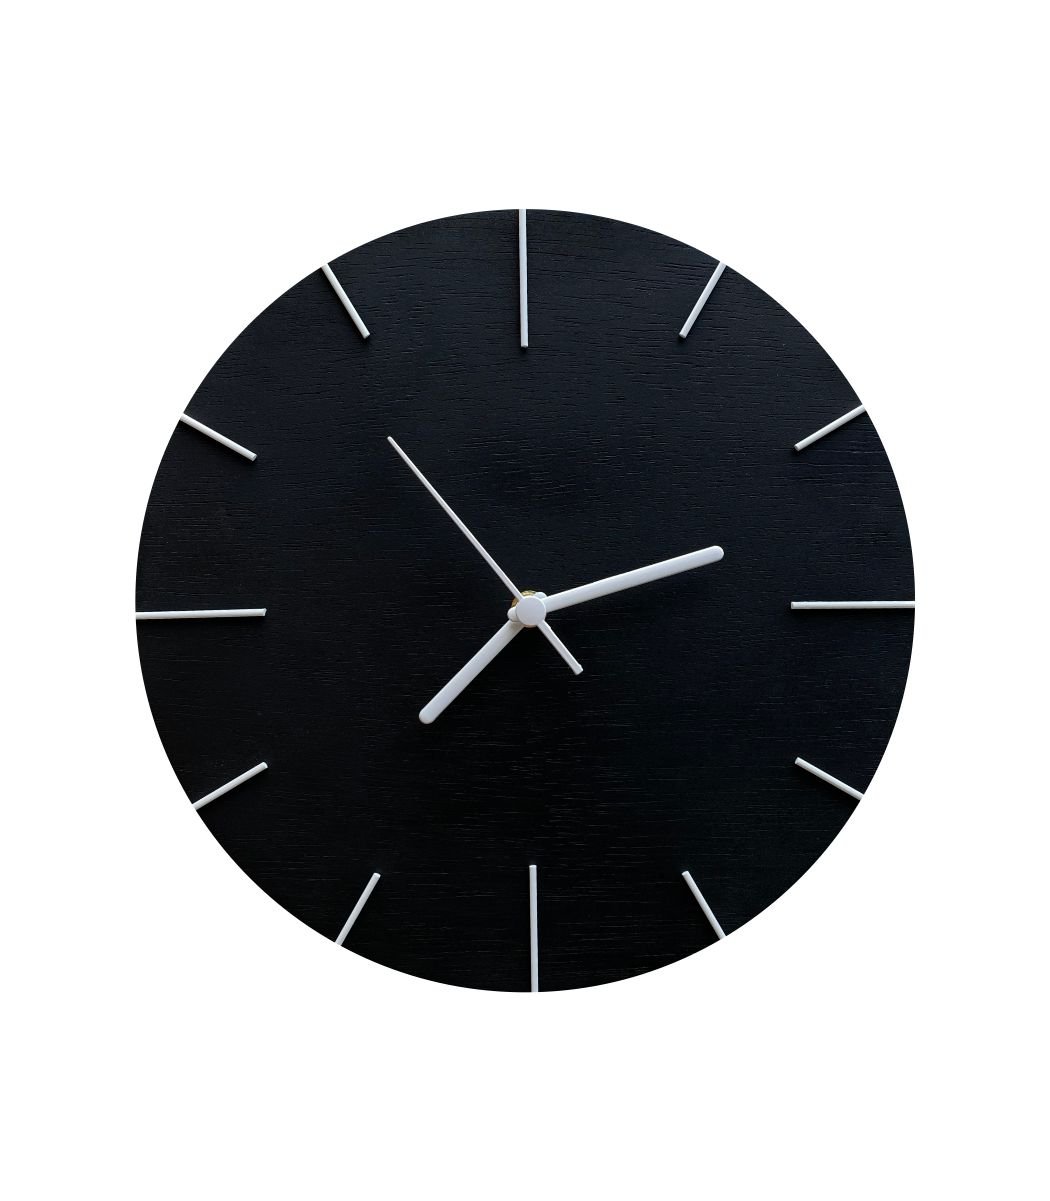 Relógio de Parede Em Madeira Preto Fosco com Ponteiros Branco 30cm